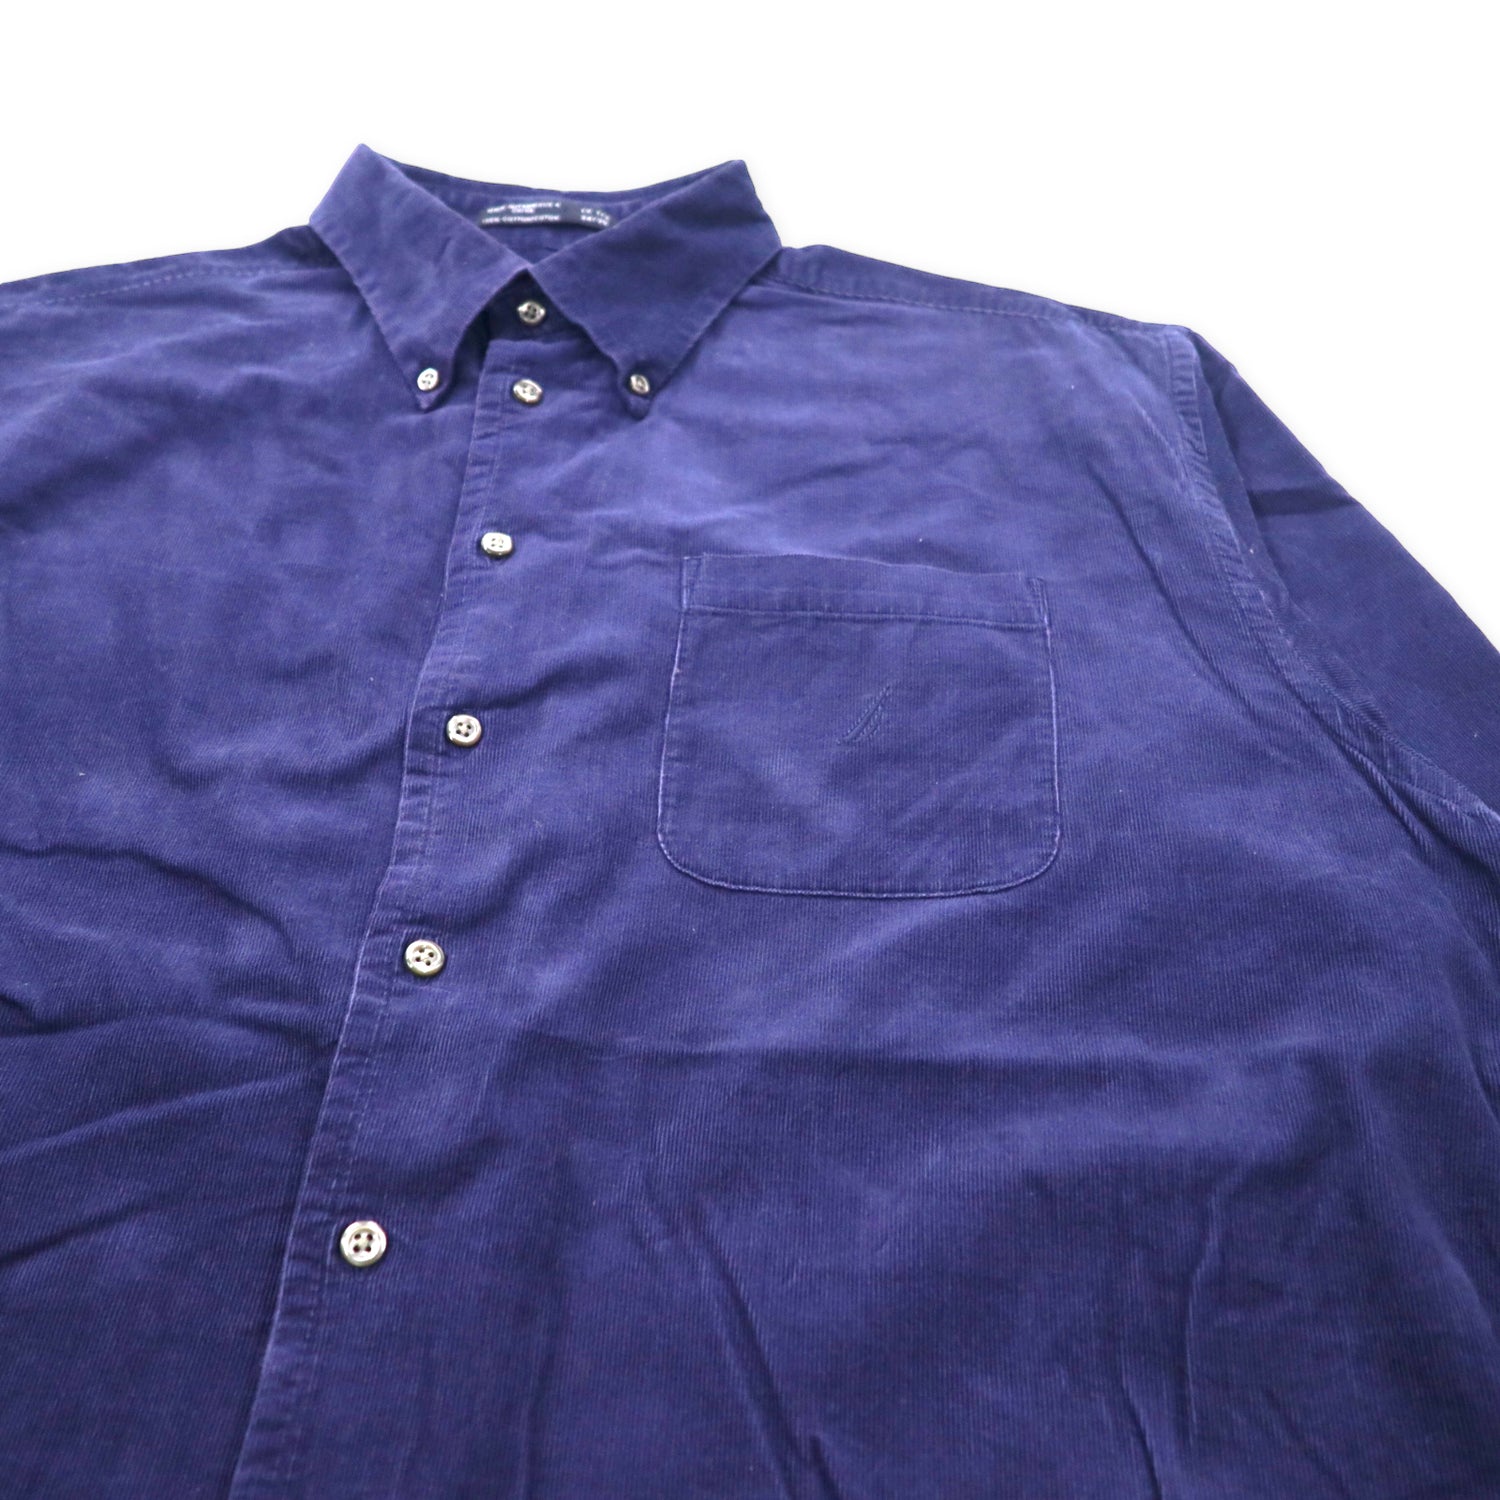 NAUTICA Corduroy Button-Down Shirts 34/35 Navy Cotton One Point